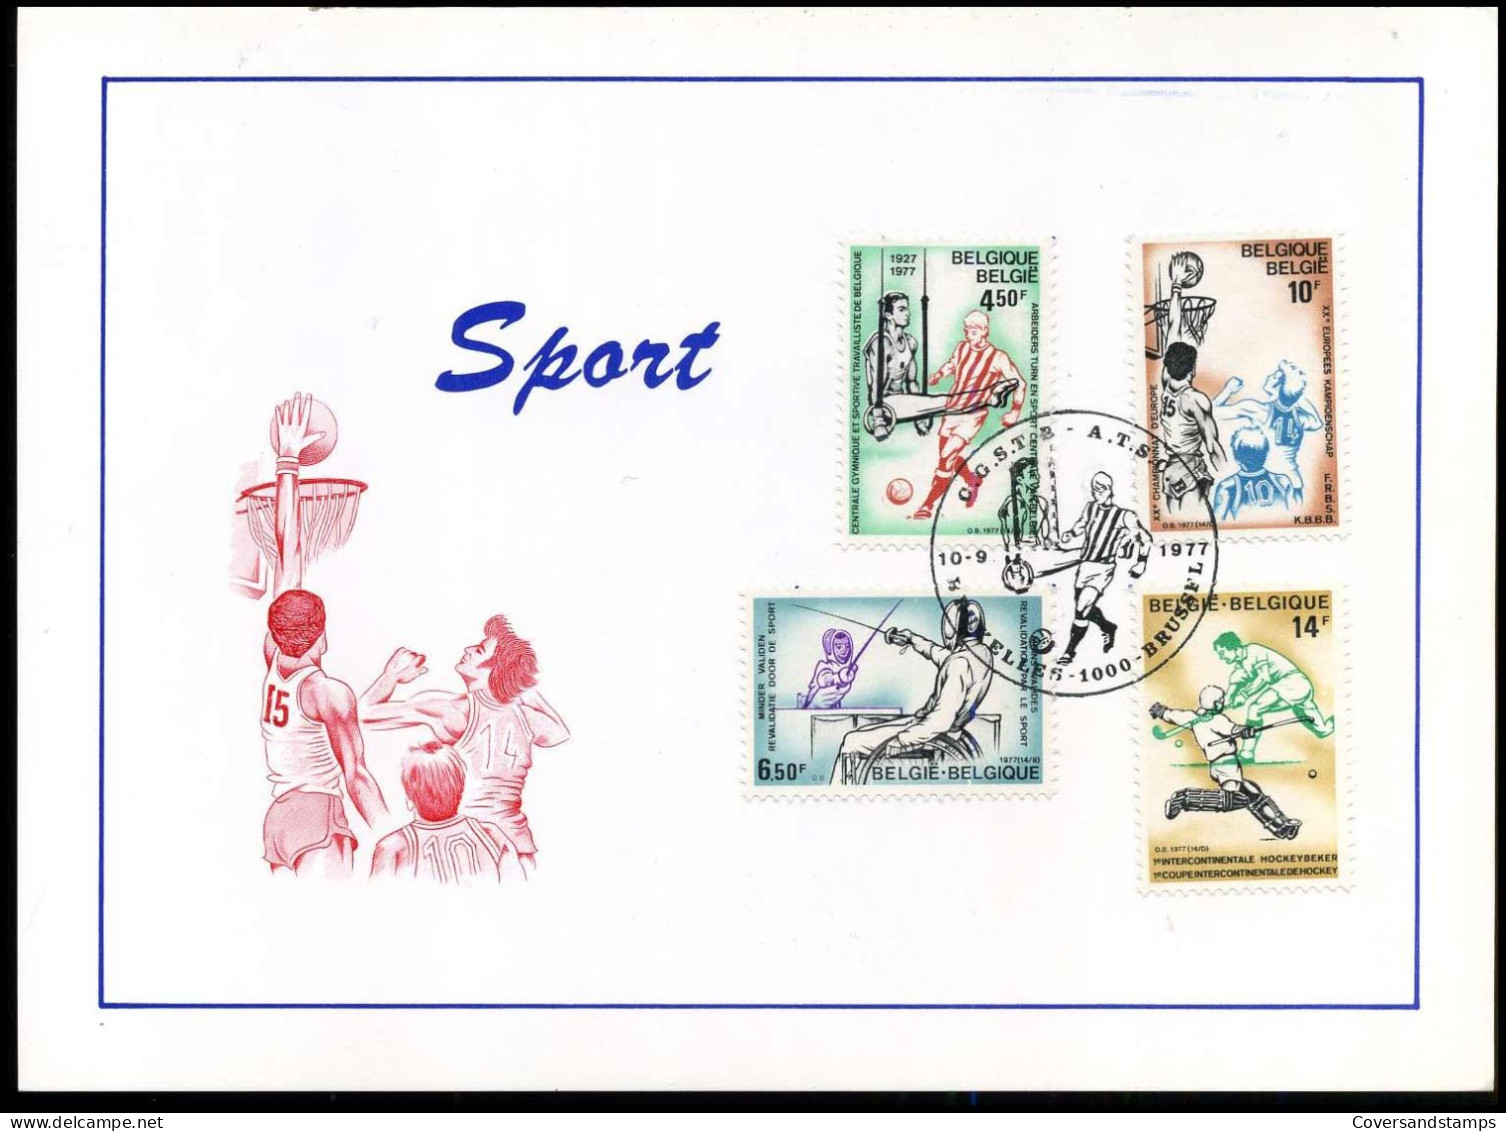 1863/66 - Sporten / Sports - Cartes Souvenir – Emissions Communes [HK]